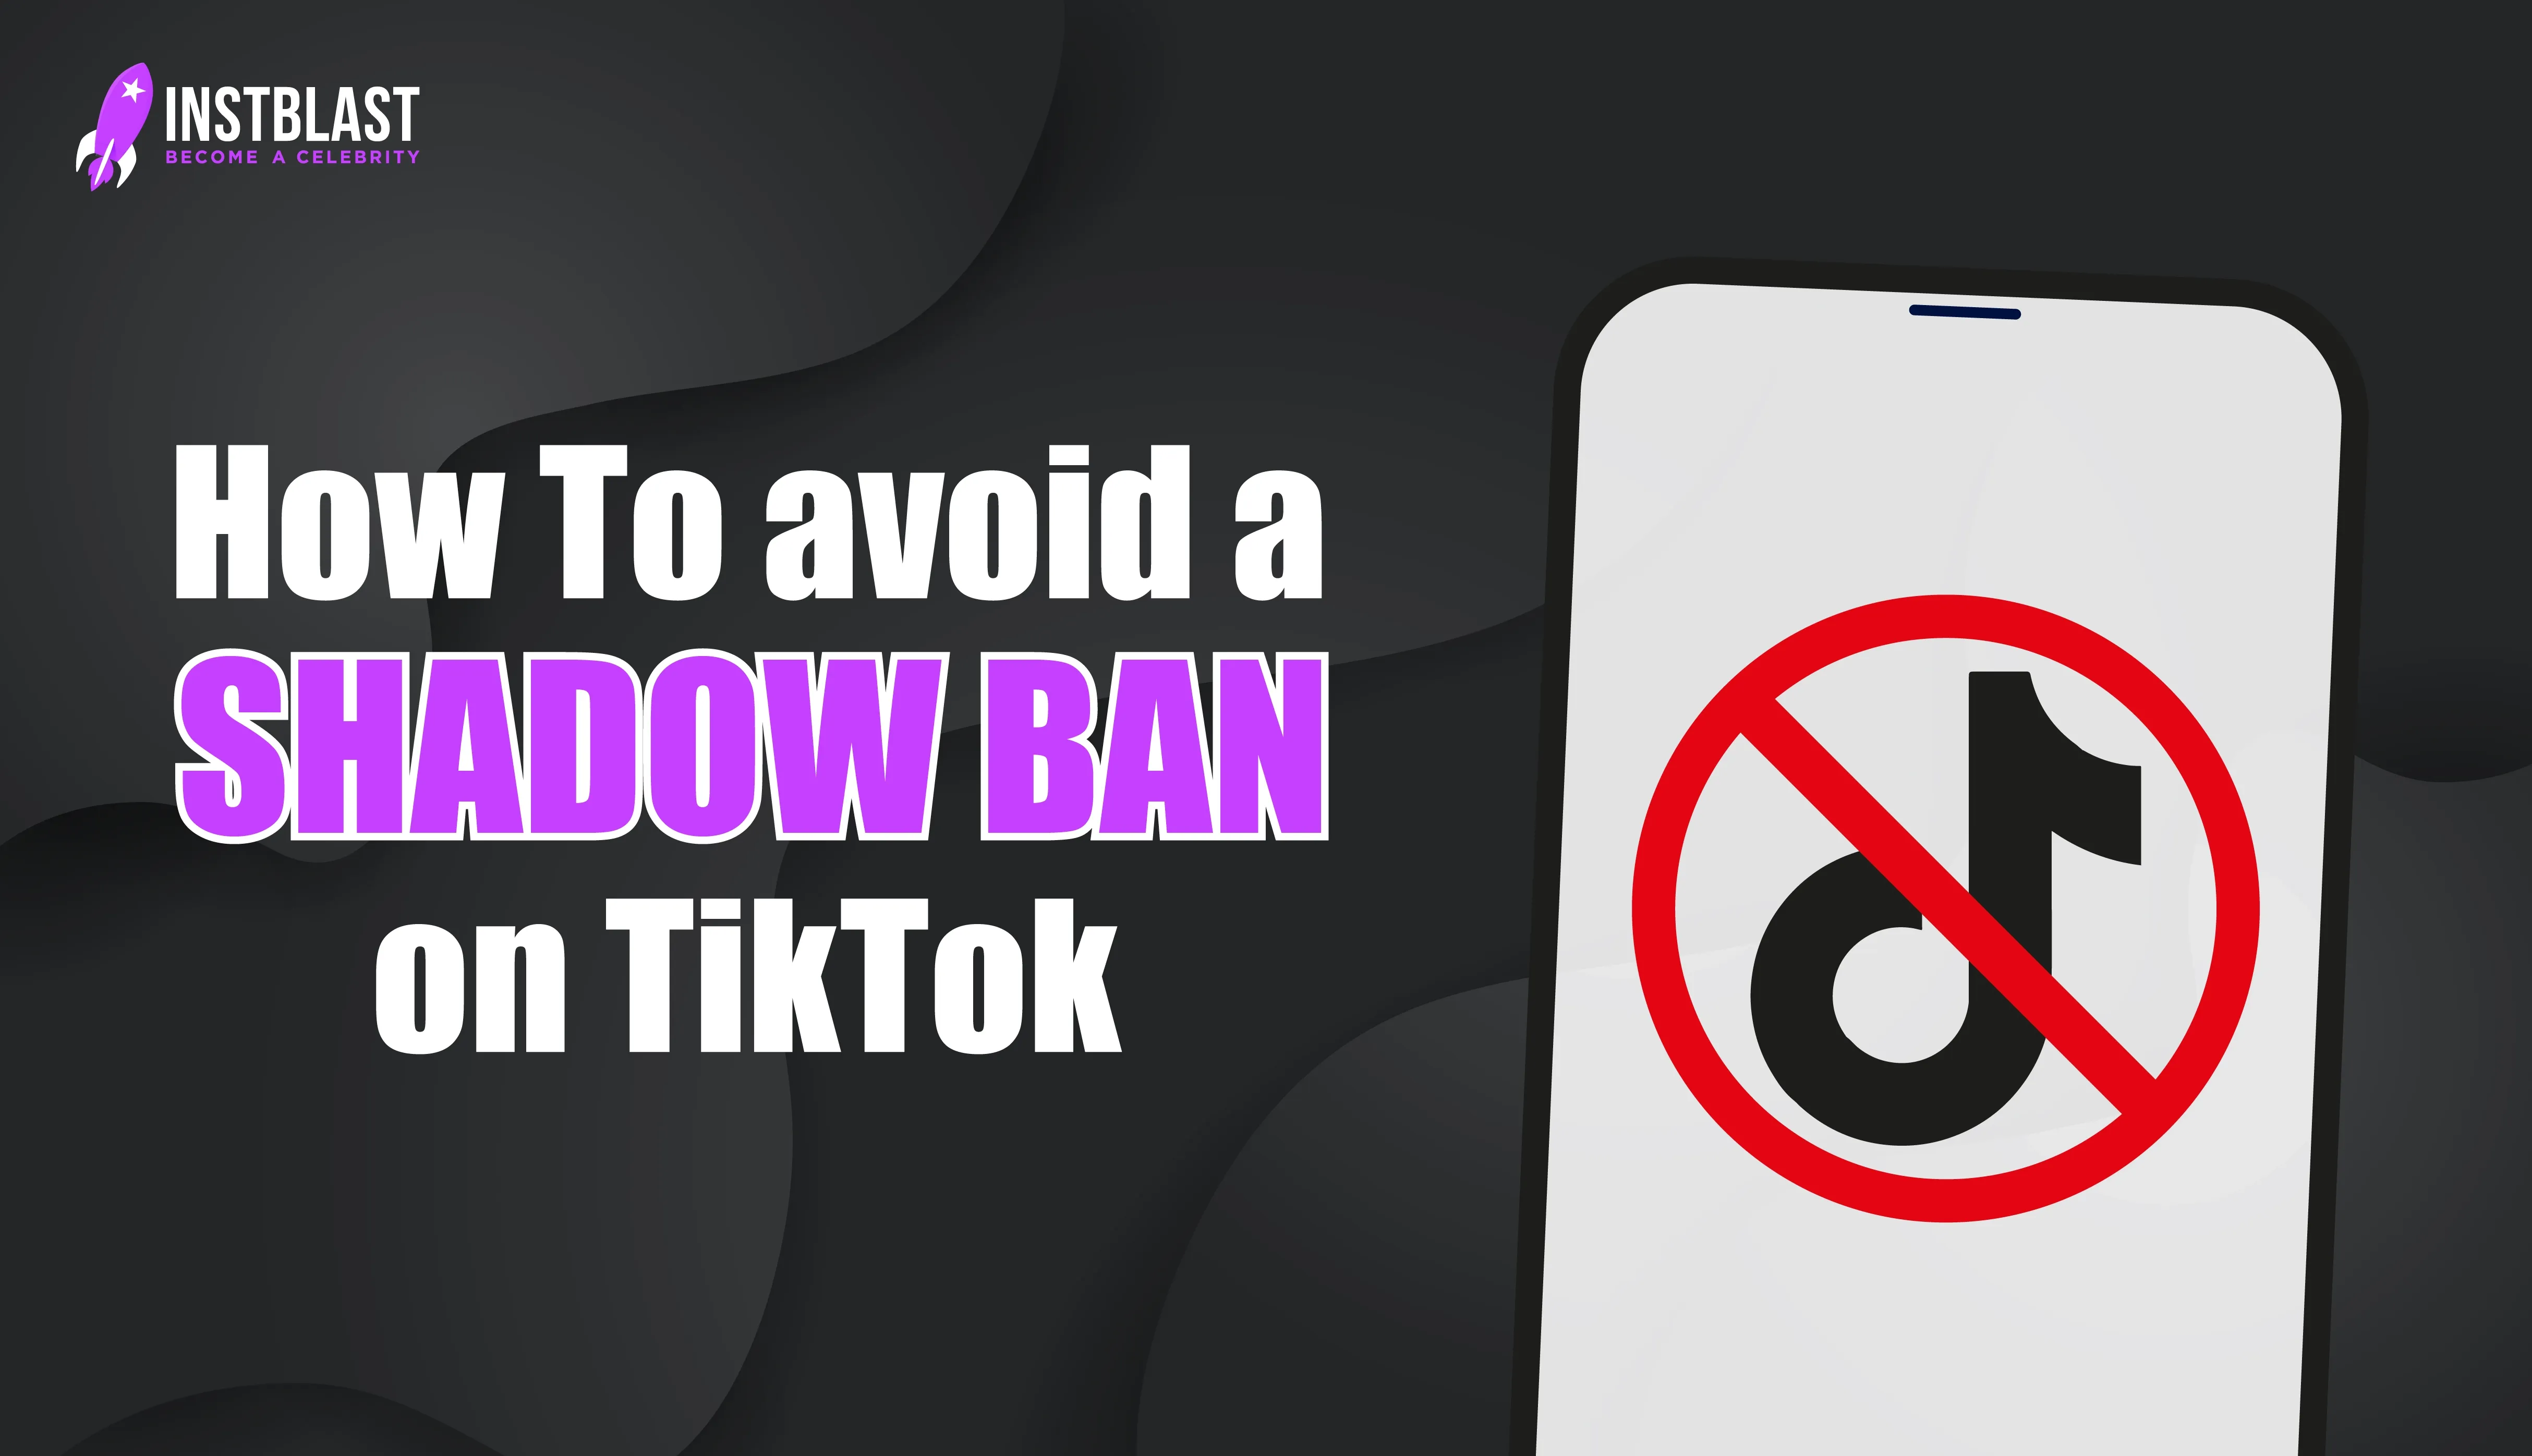 Learn How To avoid a shadowban on TikTok